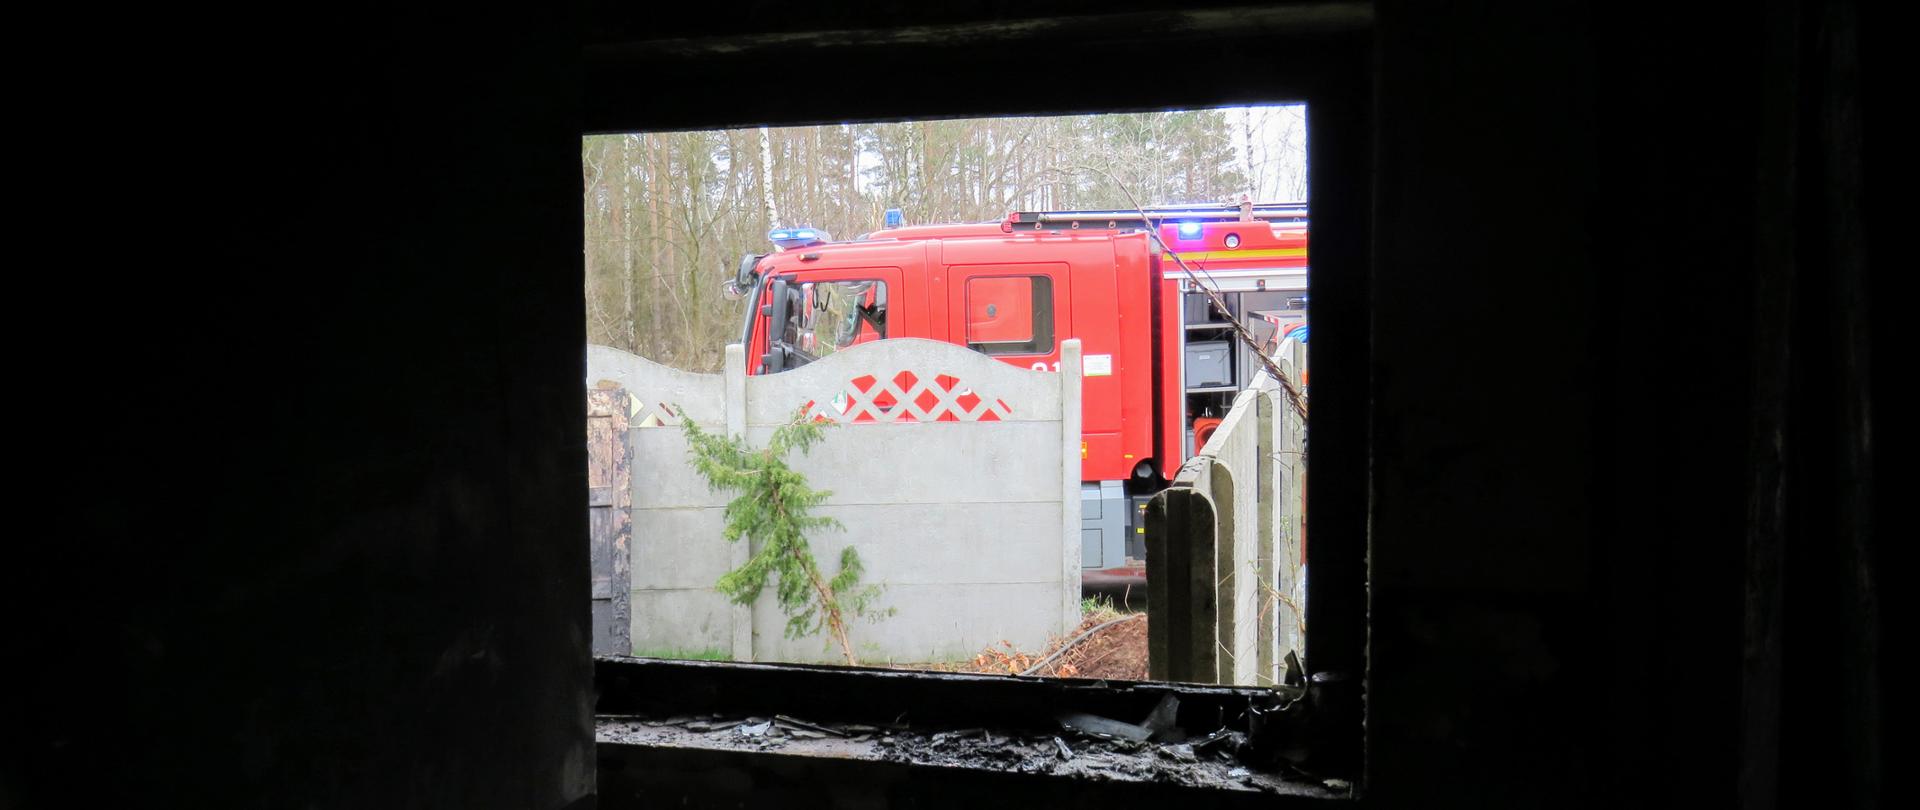 Pożar domu w Droszkowie - widok przez okno od wewnątrz spalonego budynku